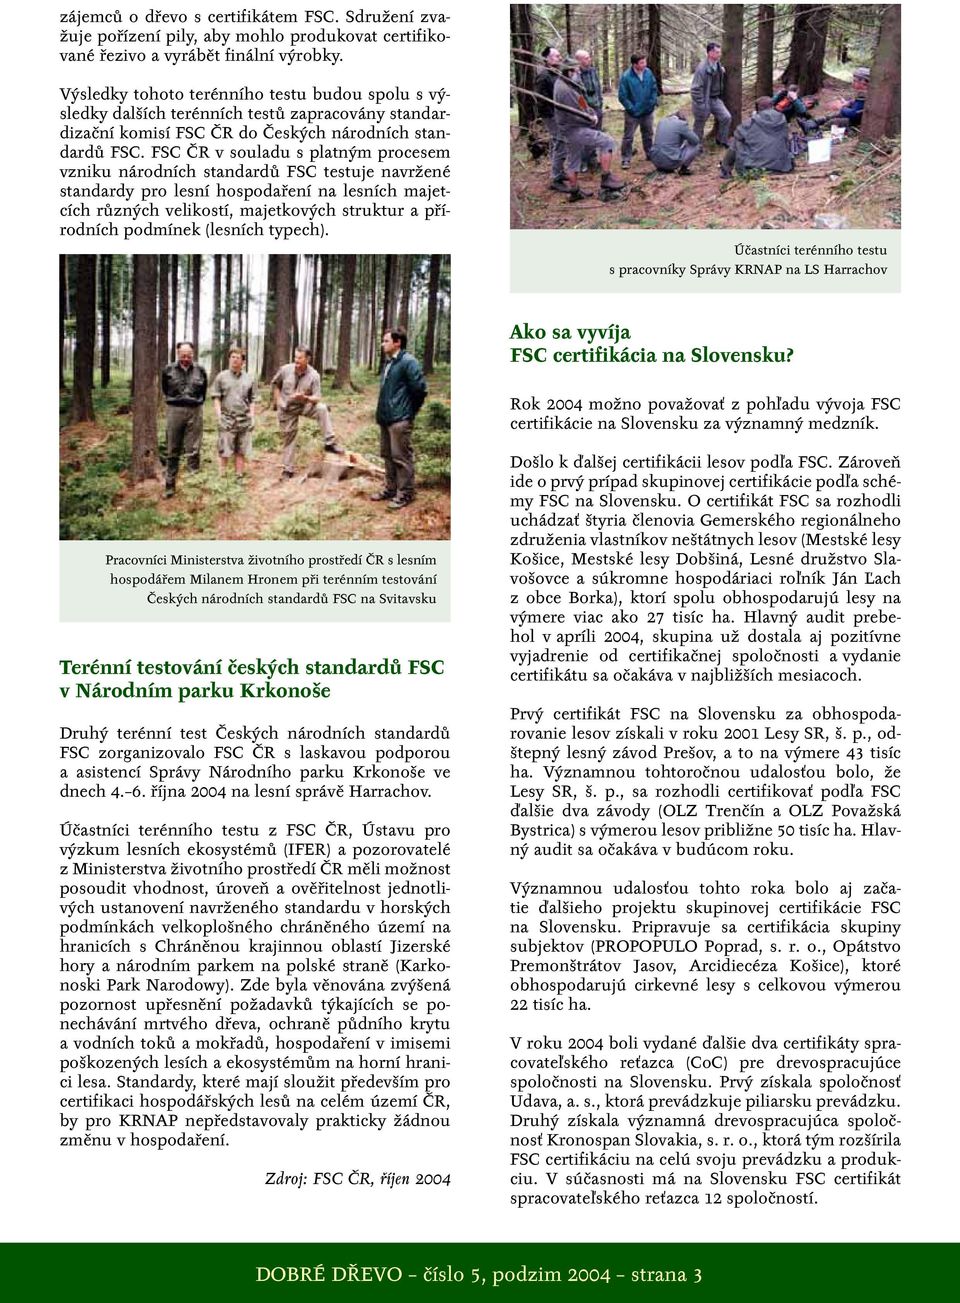 FSC ČR v souladu s platným procesem vzniku národních standardů FSC testuje navržené standardy pro lesní hospodaření na lesních majetcích různých velikostí, majetkových struktur a přírodních podmínek